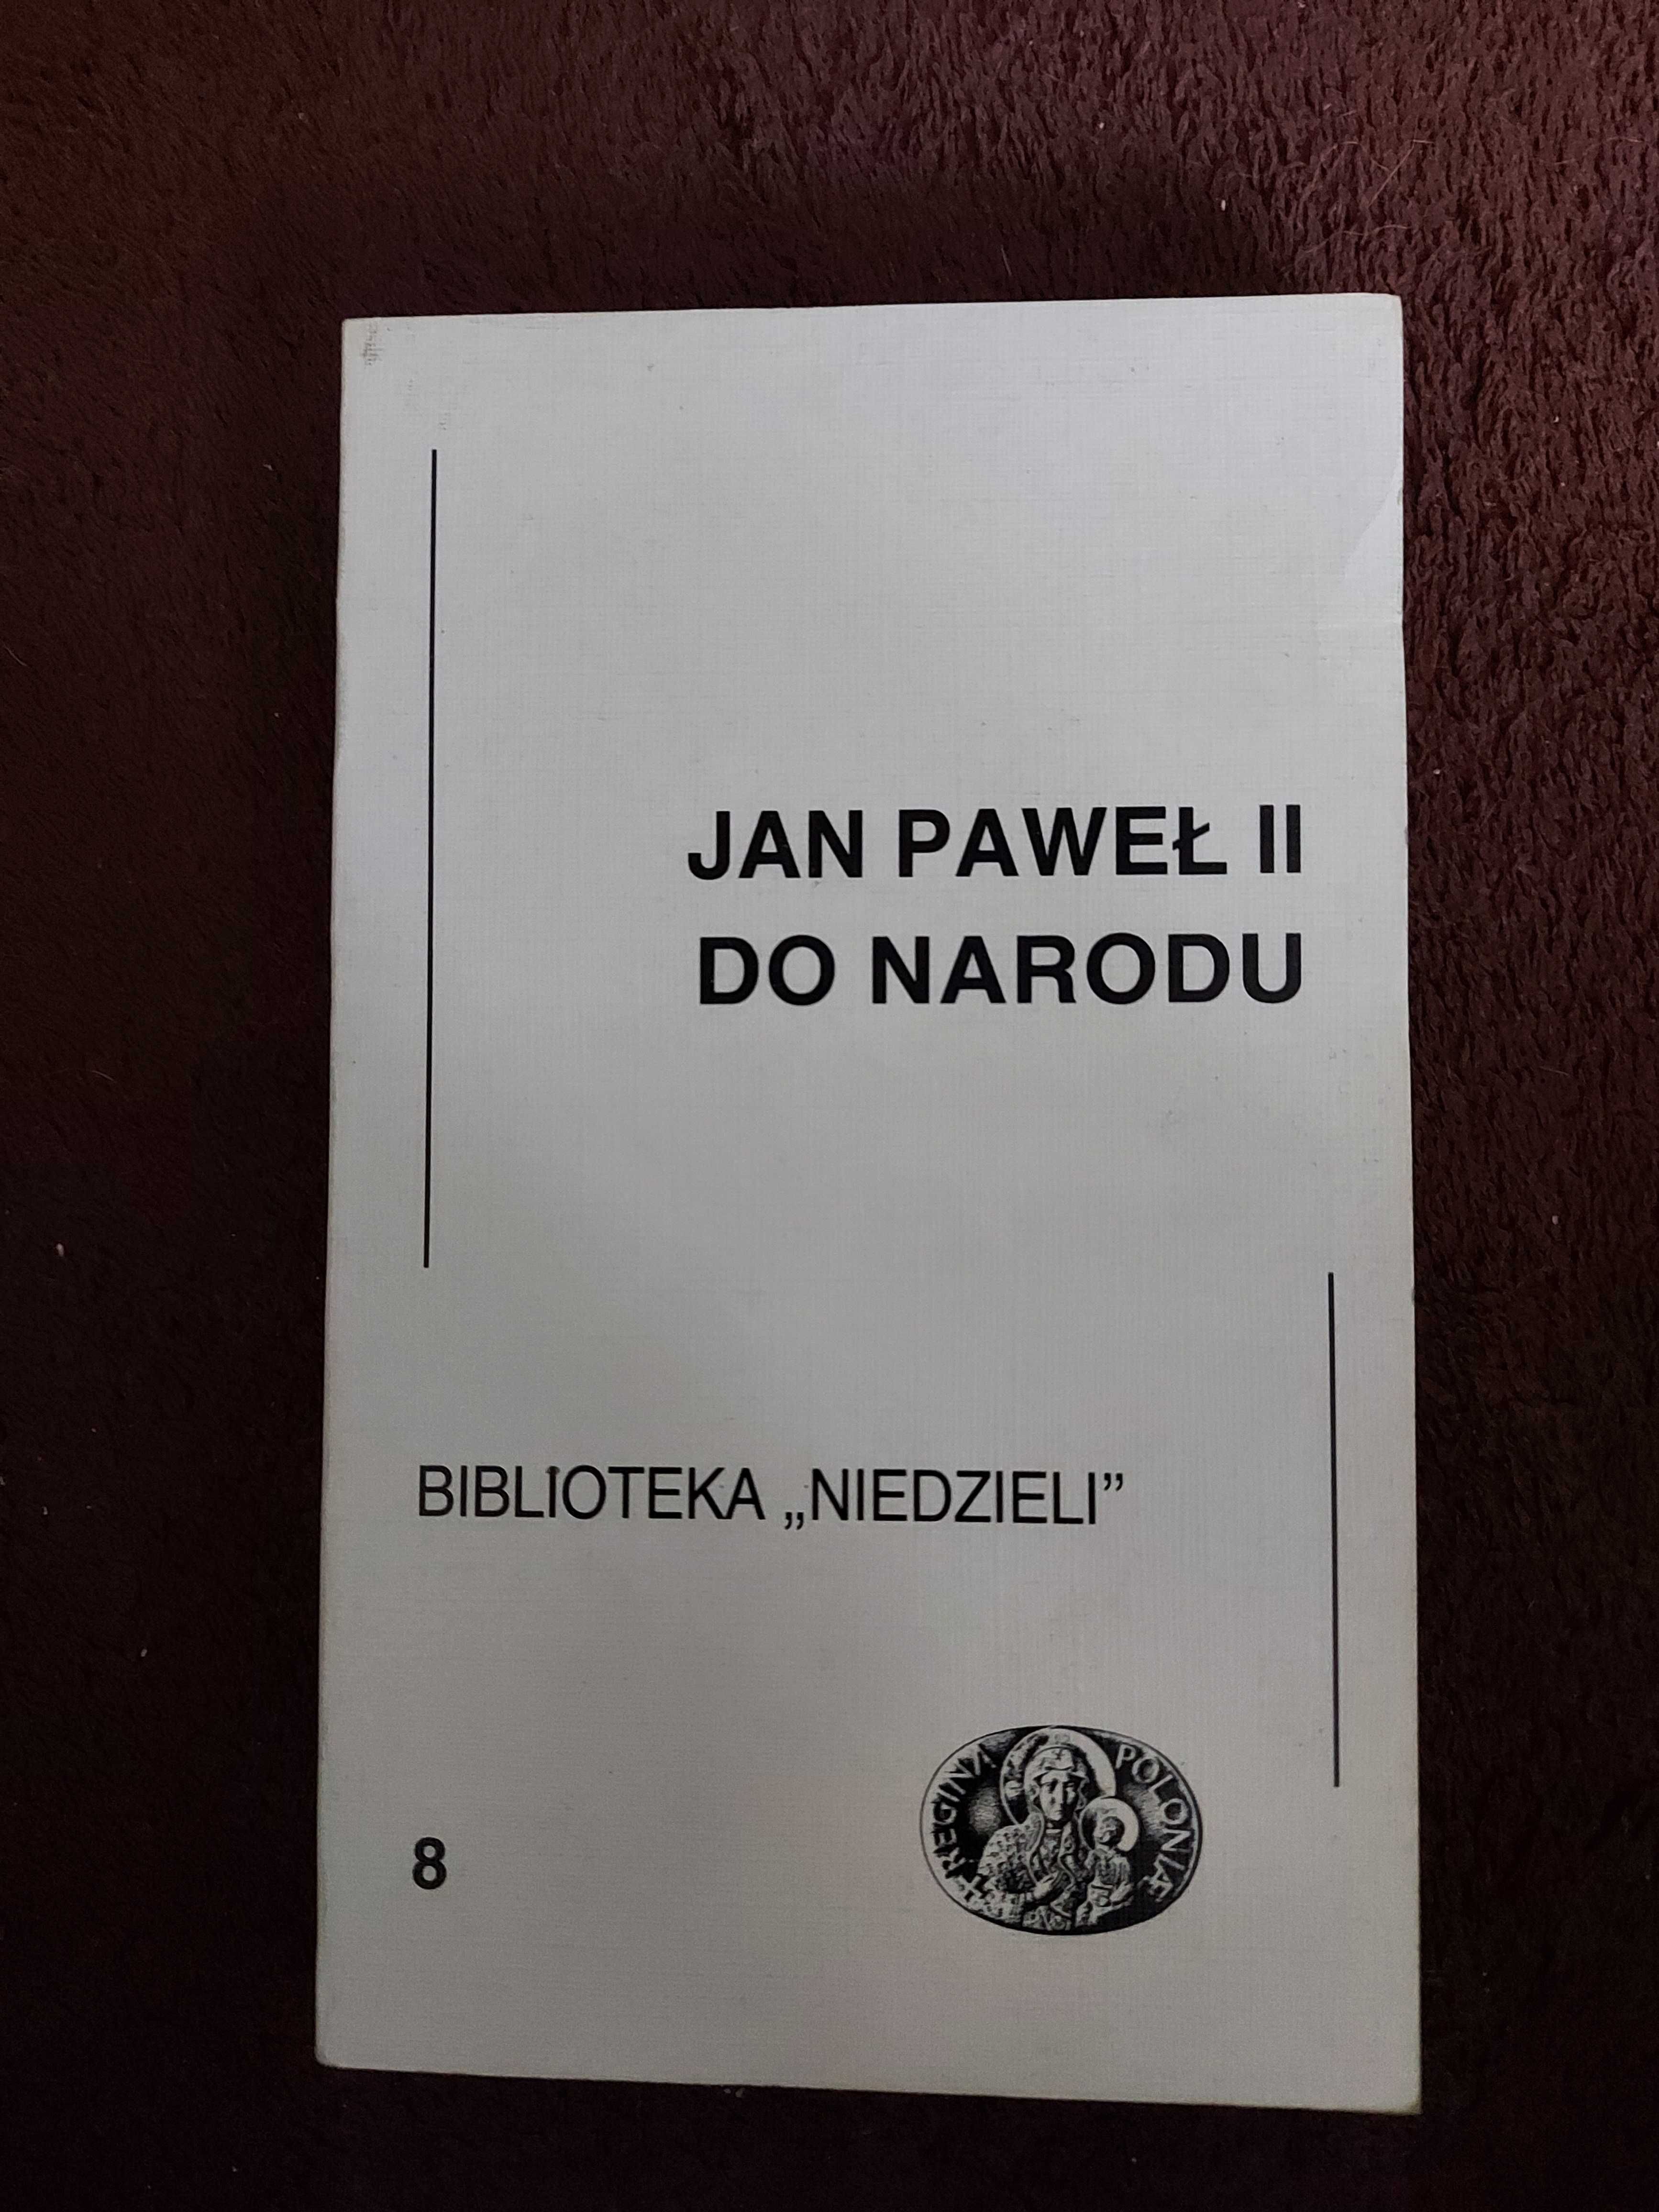 Jan Paweł II do narodu - Biblioteka " Niedzieli "